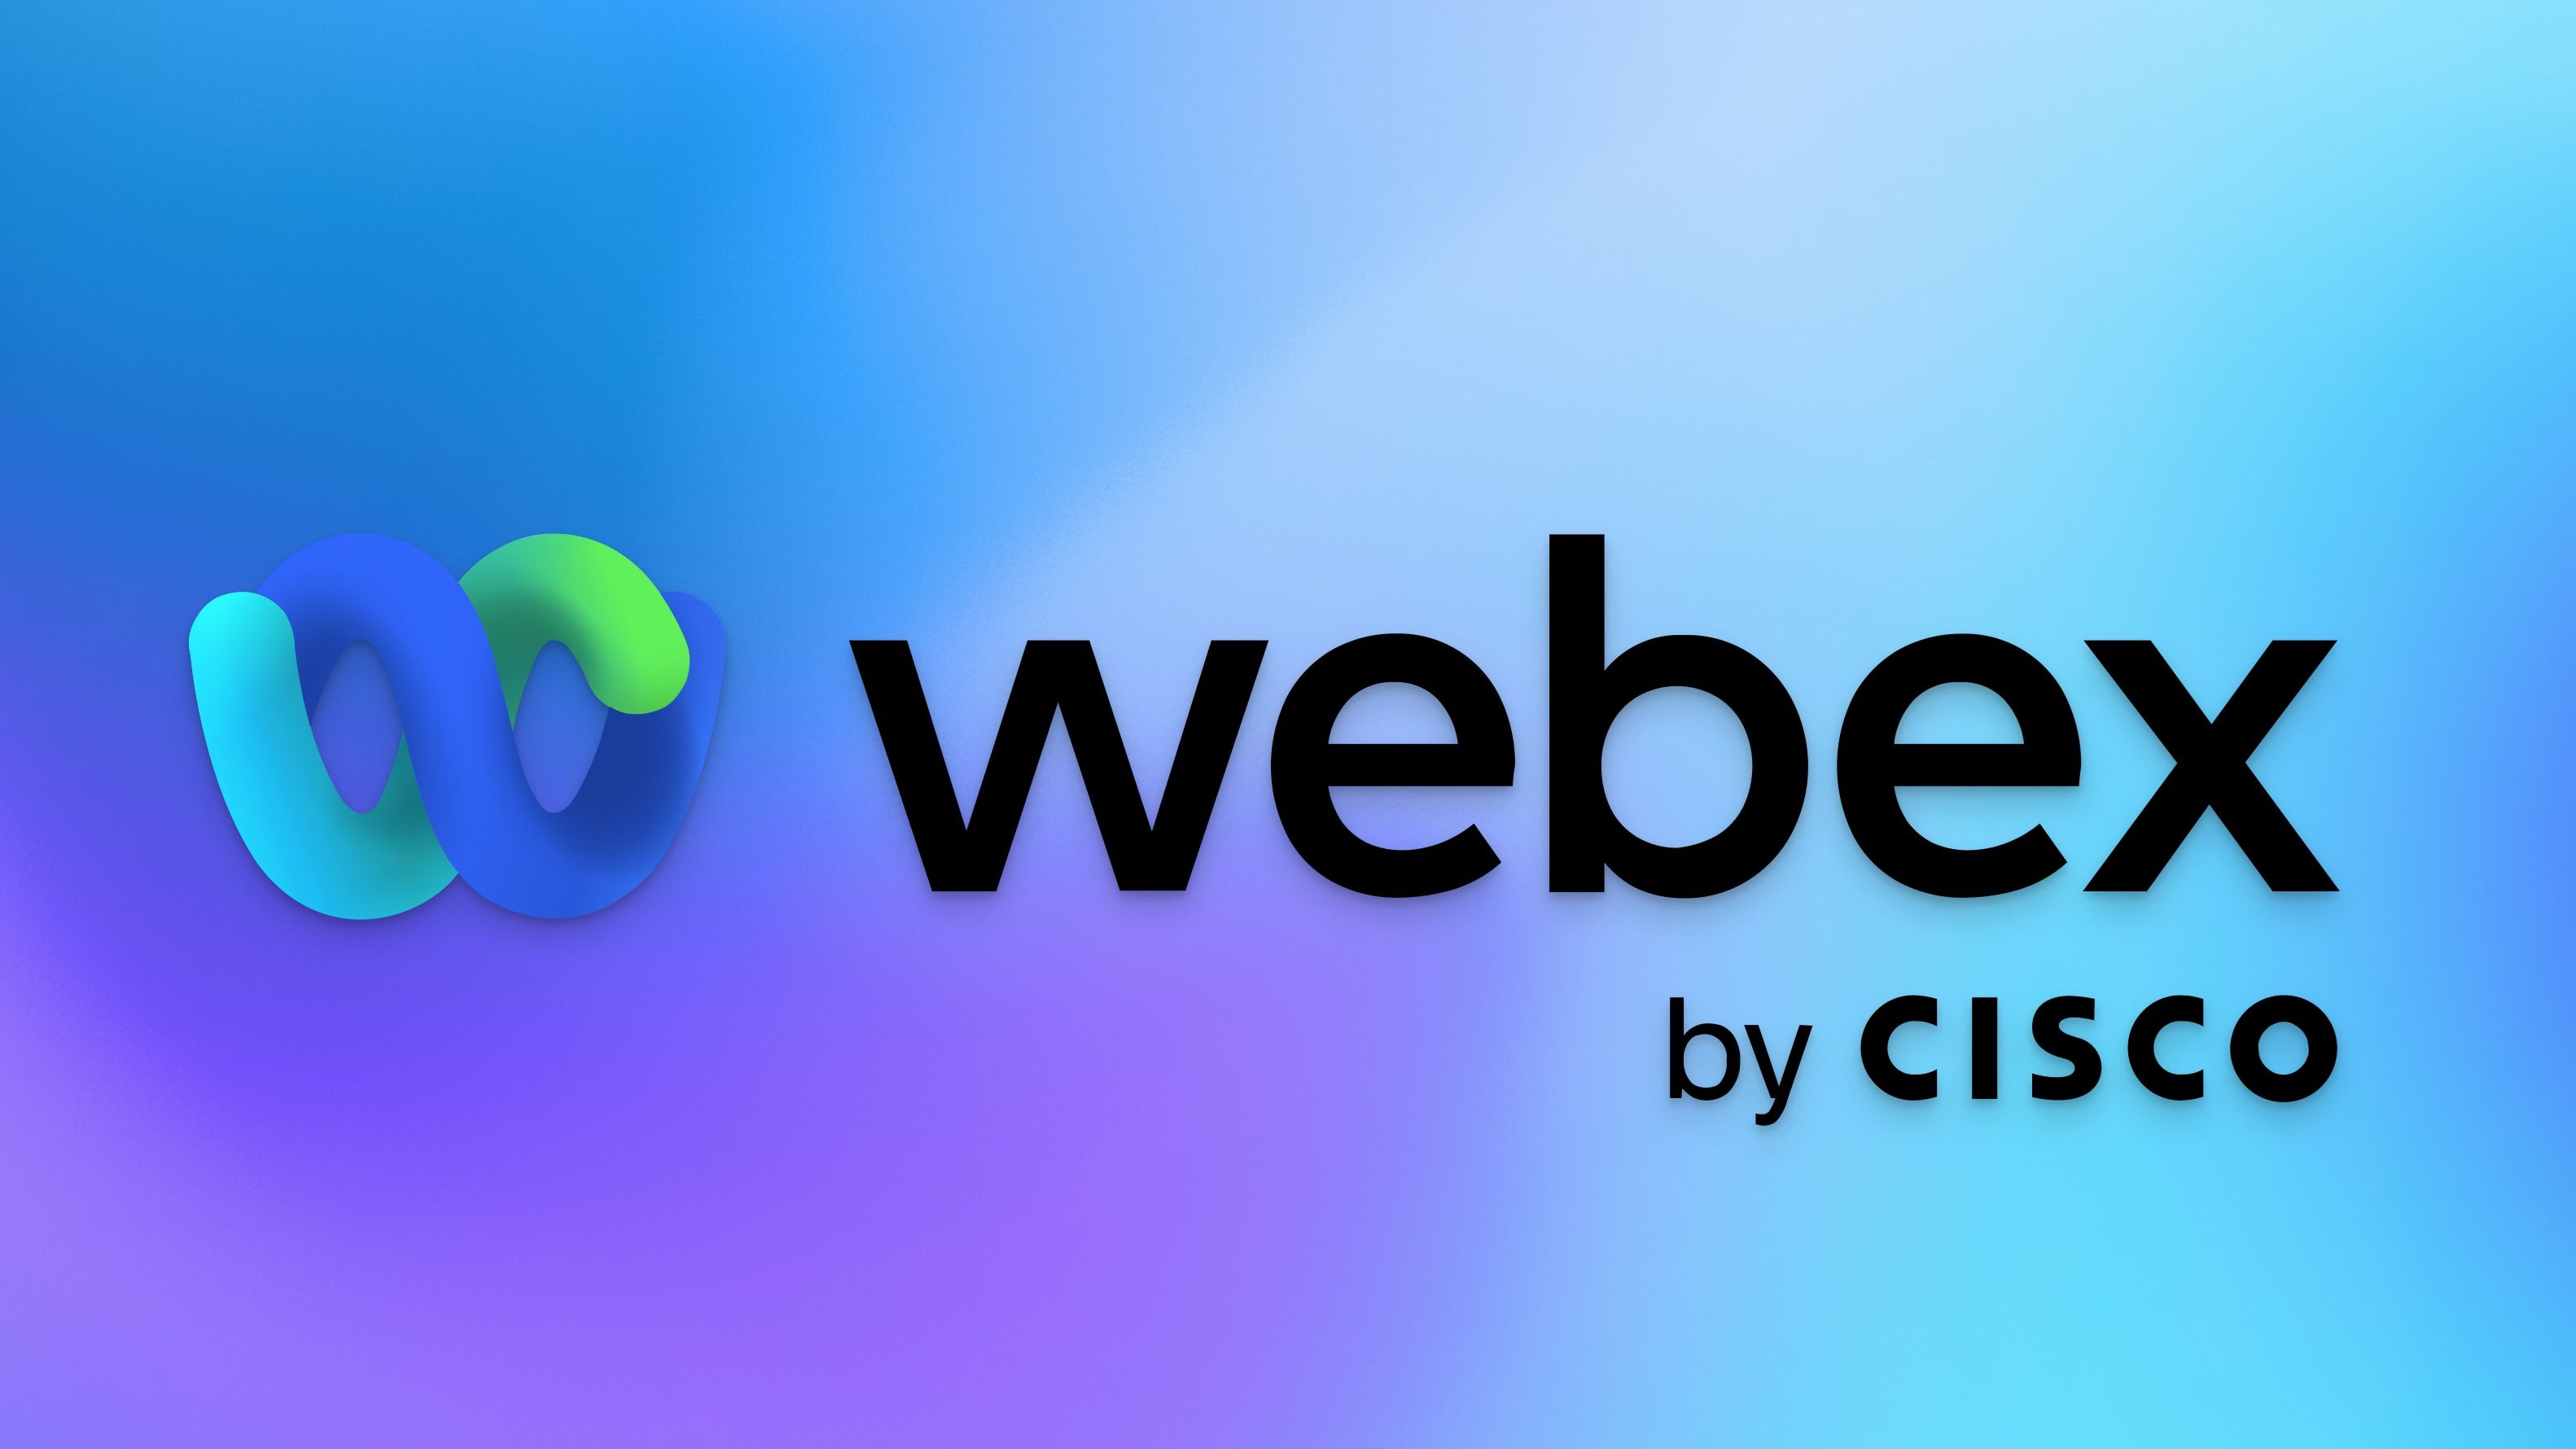 Webex logo with gradient background